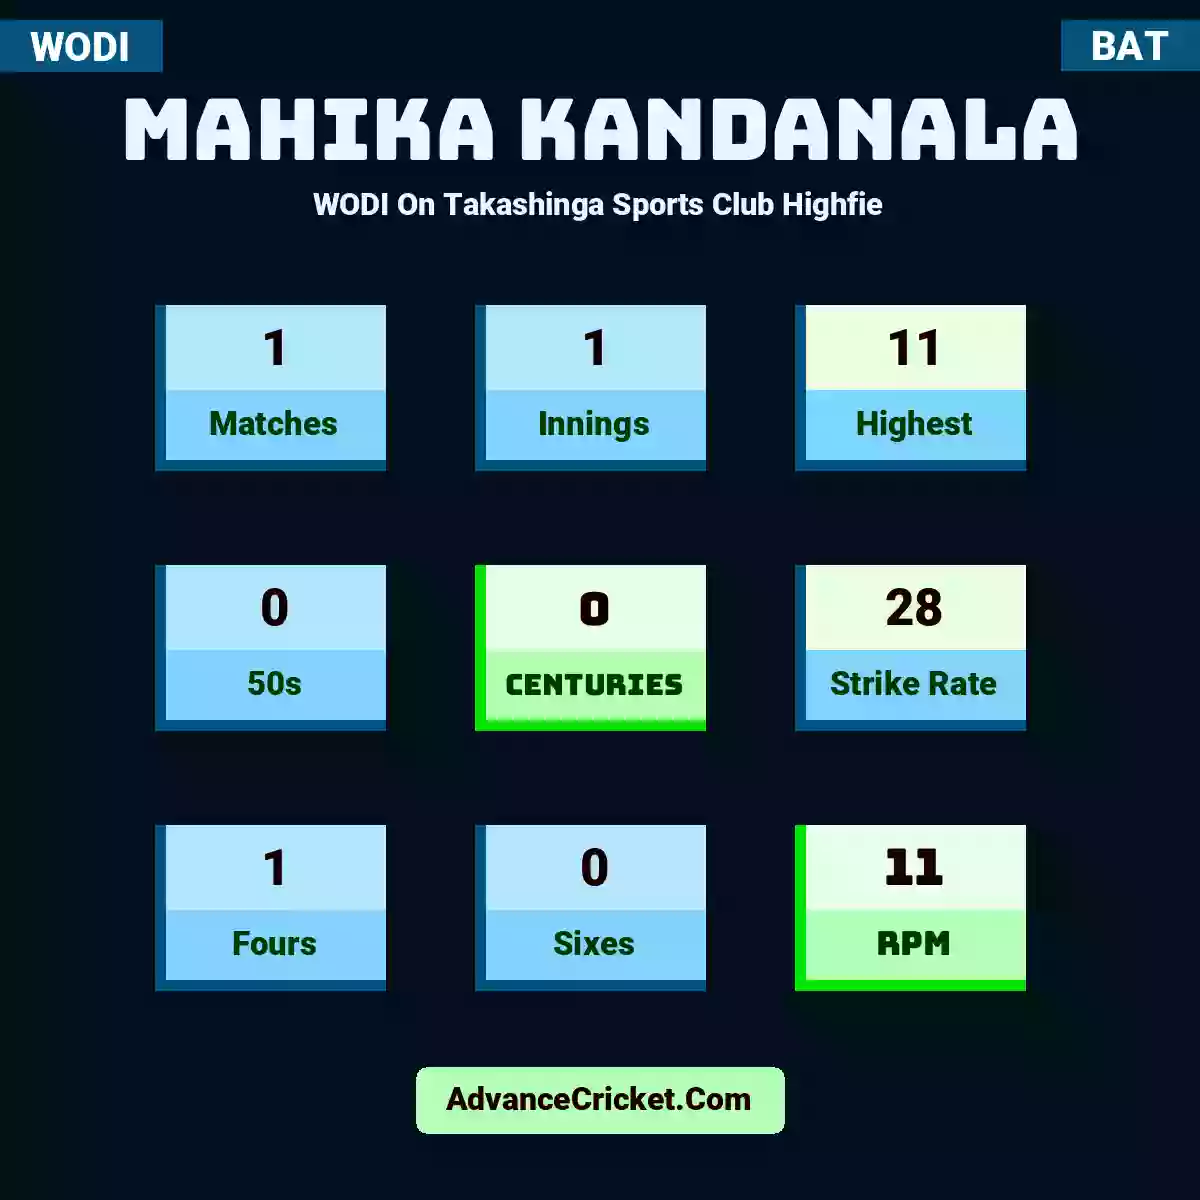 Mahika Kandanala WODI  On Takashinga Sports Club Highfie, Mahika Kandanala played 1 matches, scored 11 runs as highest, 0 half-centuries, and 0 centuries, with a strike rate of 28. M.Kandanala hit 1 fours and 0 sixes, with an RPM of 11.